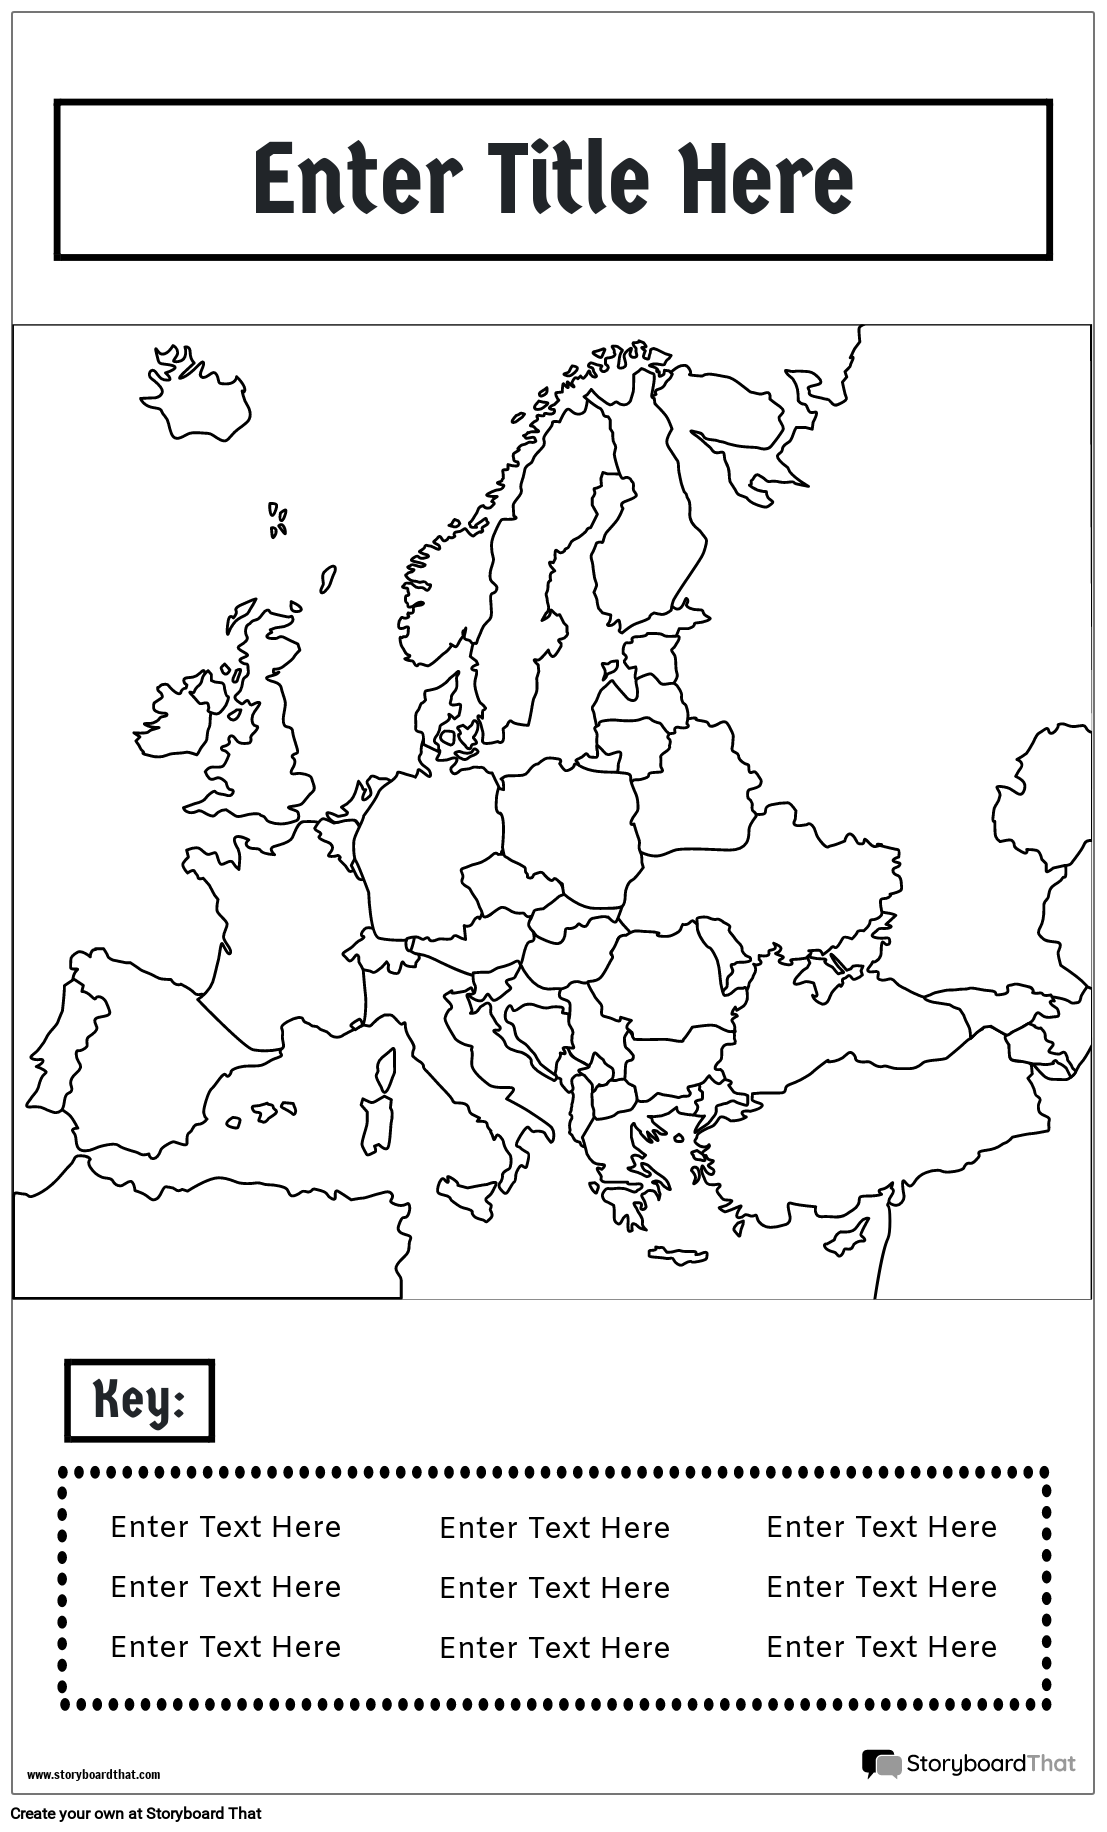 Plakat z Mapą 17 BW Portret-Europa